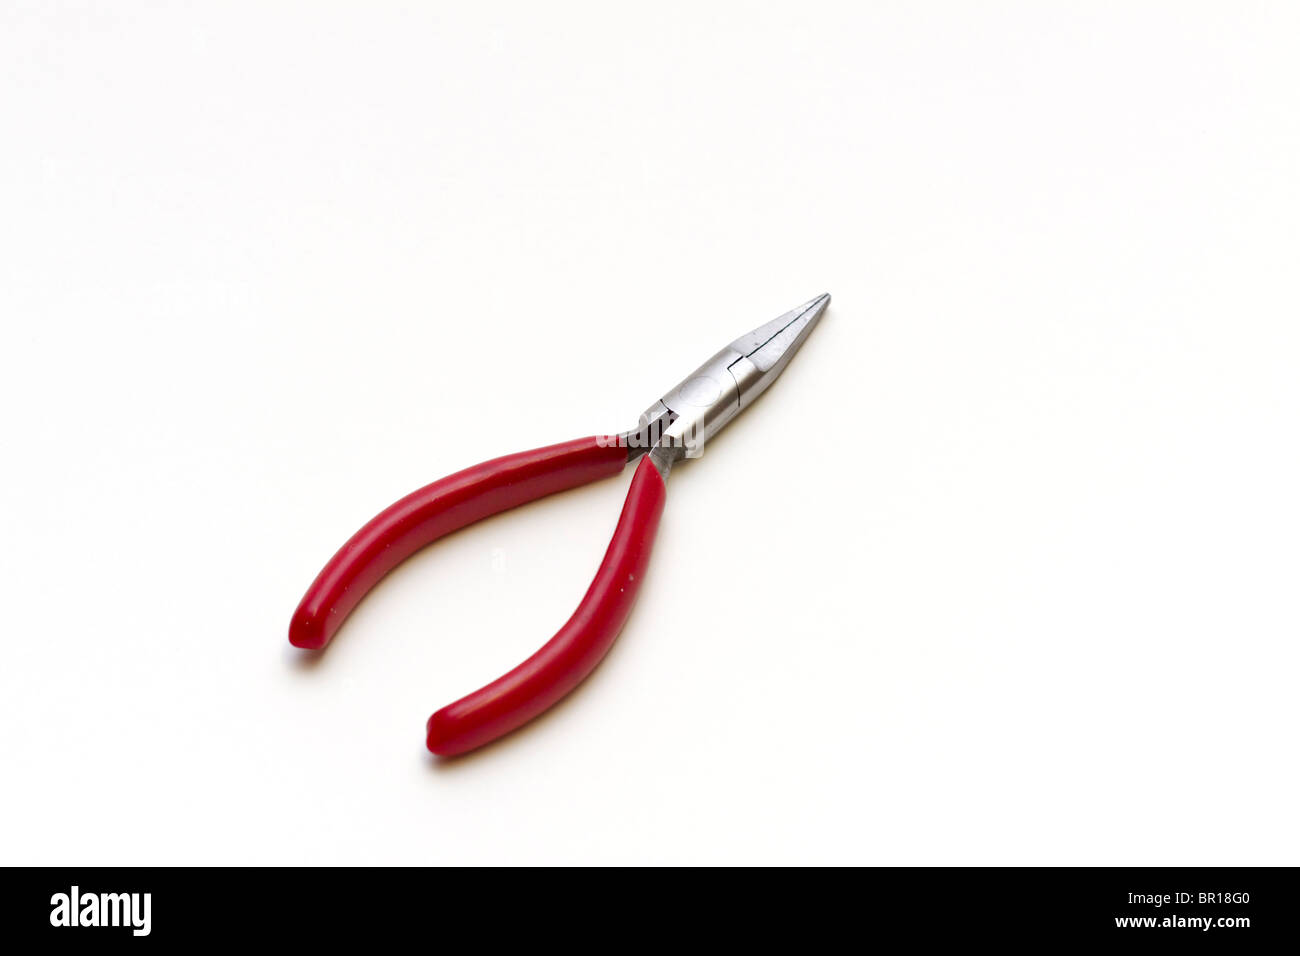 Kreuzschlitzschraubenzieher Zange mit einem roten Kunststoff isolierten Griff Stockfoto